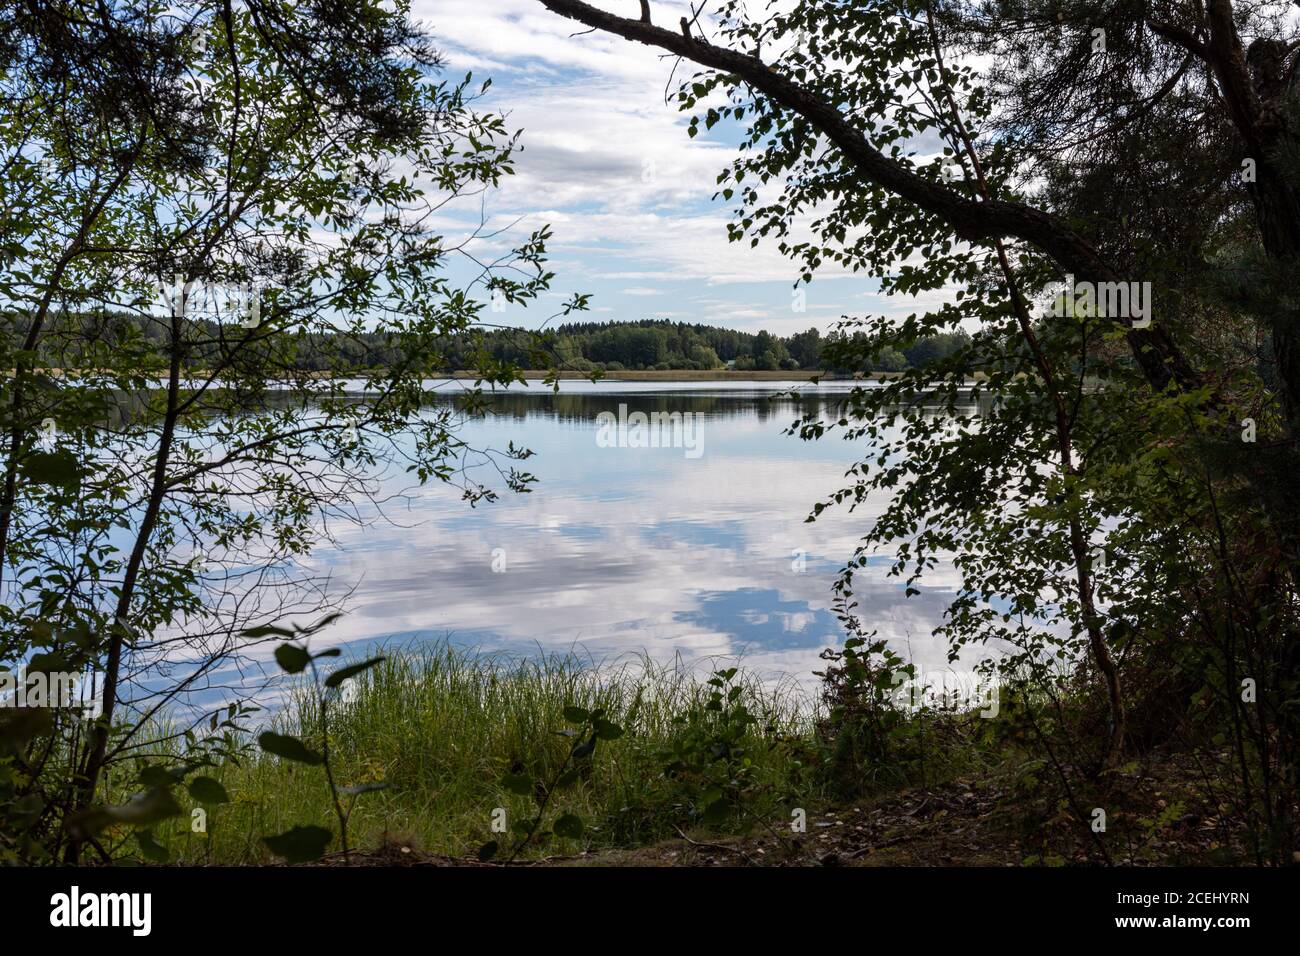 Himmel und Wolken spiegeln sich in einem ruhigen See. Blick auf die finnische Natur. Stockfoto